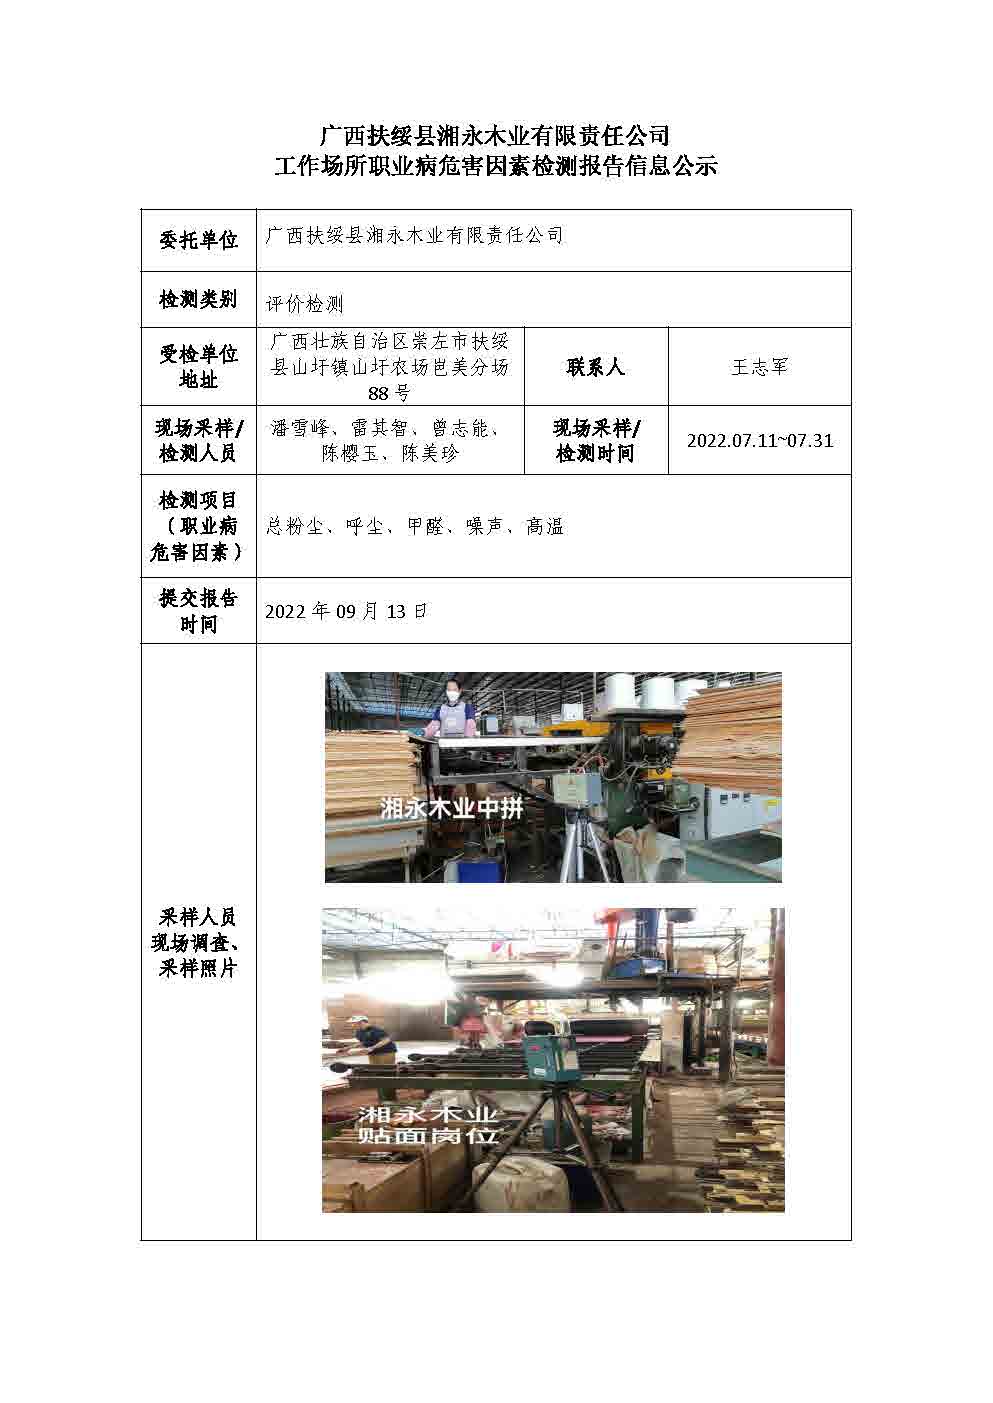 广西扶绥县湘永木业有限责任公司工作场所职业病危害因素检测报告信息公示